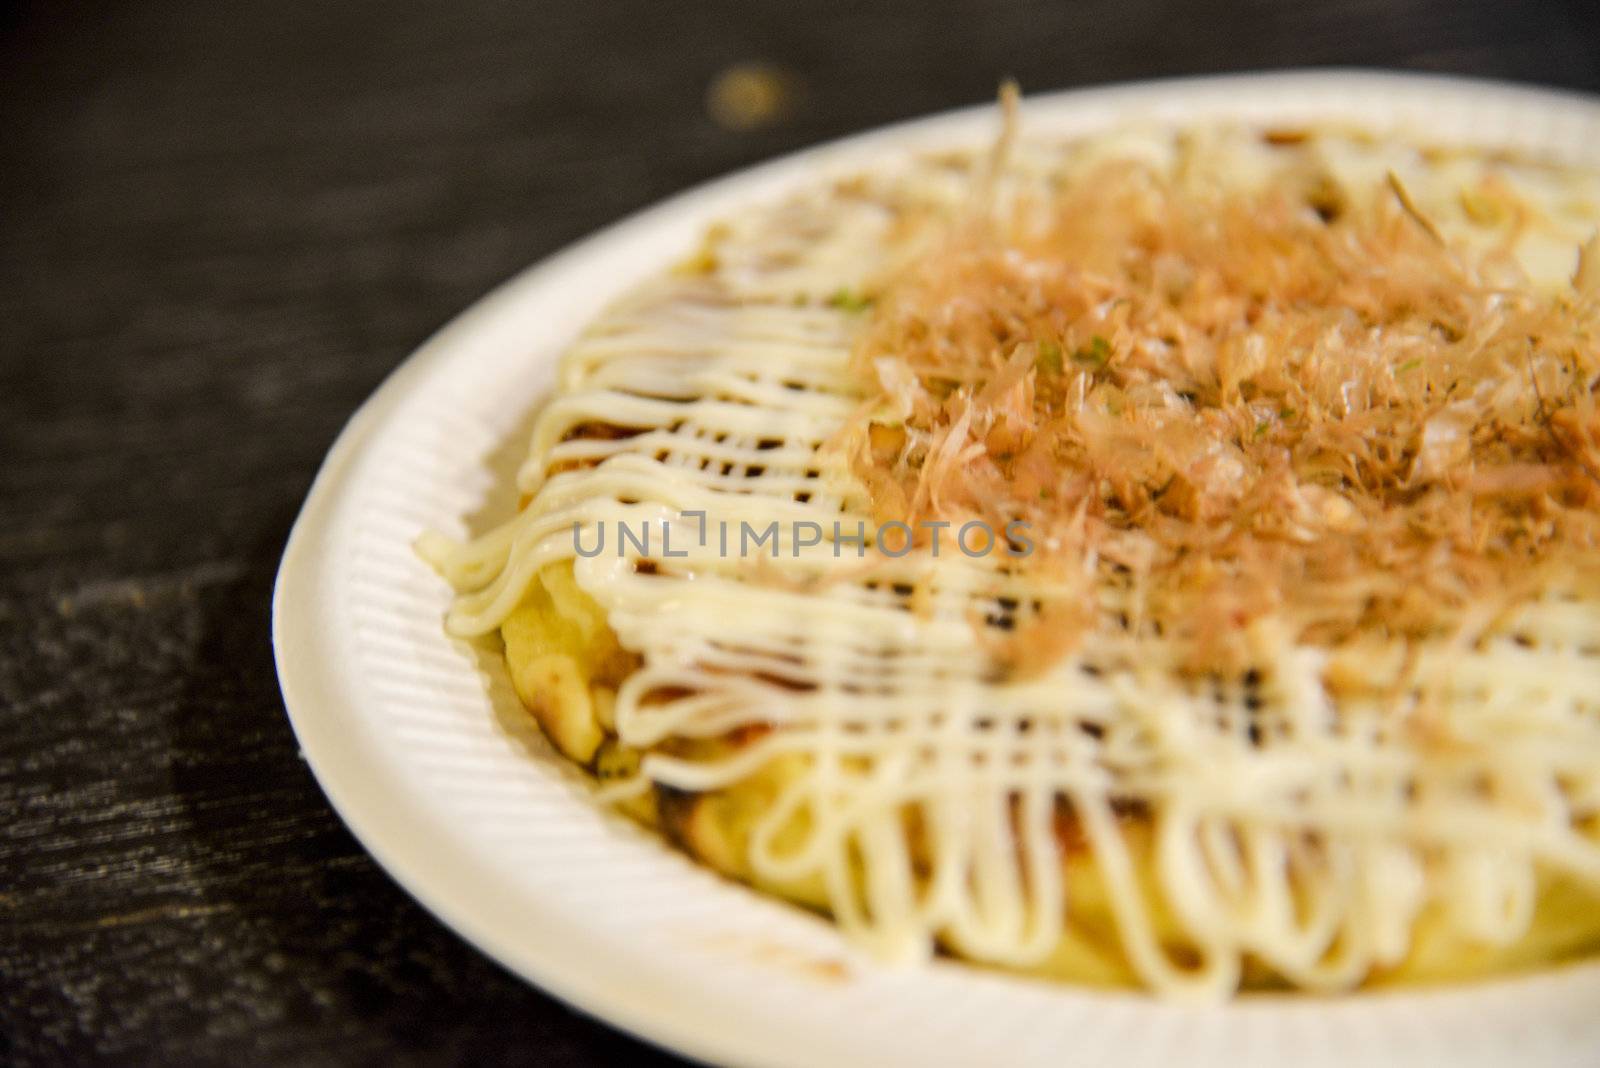 Okonomiyaki in the plate2 by gjeerawut